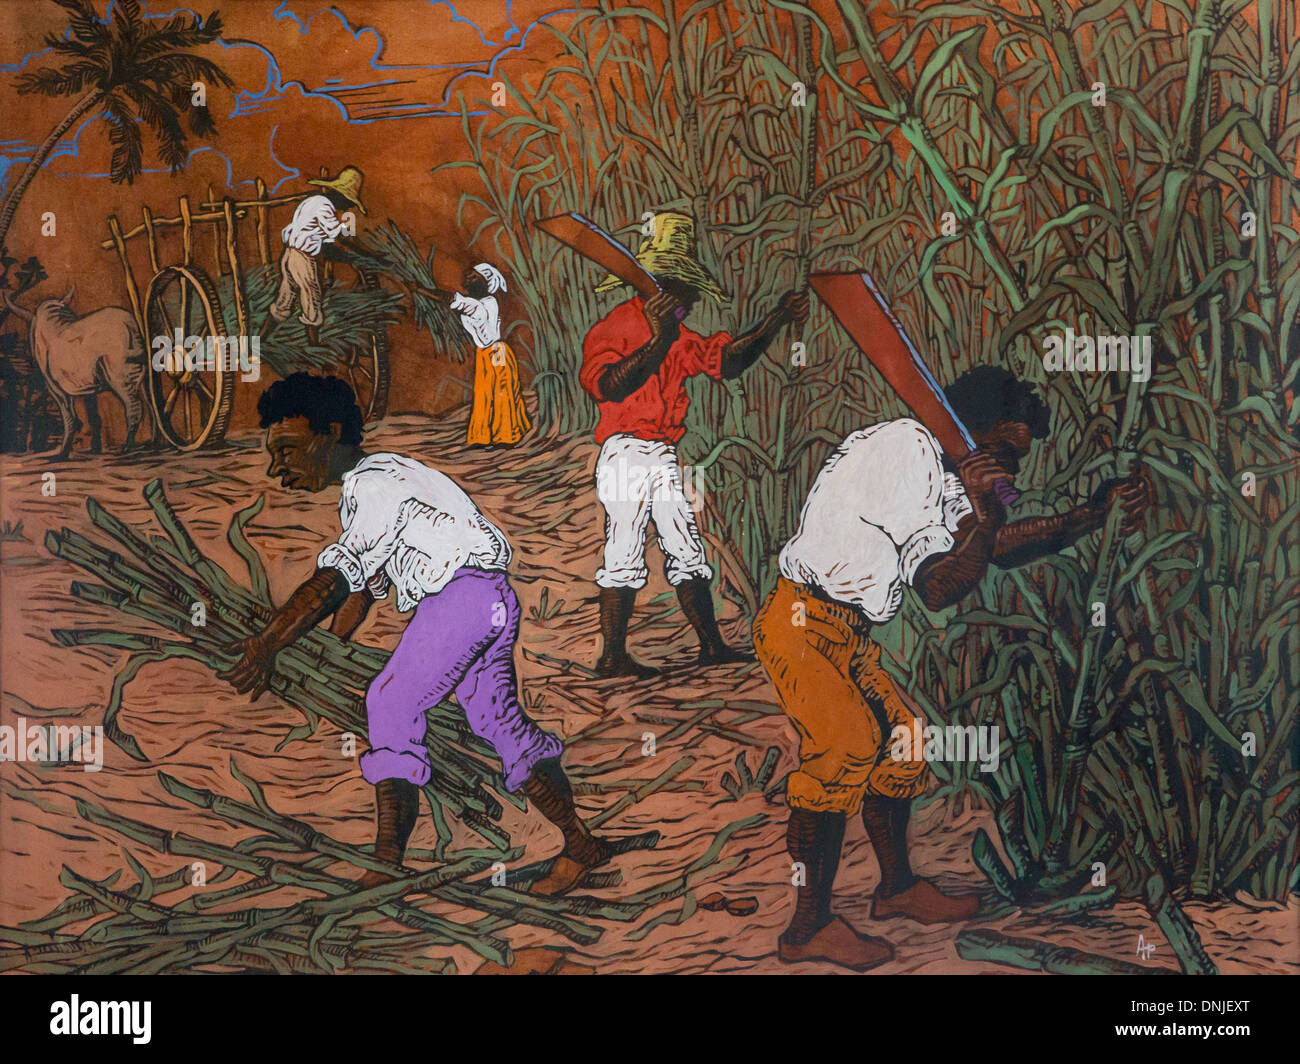 UNSIGNED PEINTURE CONTEMPORAINE montrant les esclaves noirs africains DE CANNE À SUCRE SUR L'ANCIENNE PLANTATION DANS LA VALLÉE DE LOS INGENIOS, classée au Patrimoine Mondial par l'UNESCO, CUBA, LES CARAÏBES Banque D'Images